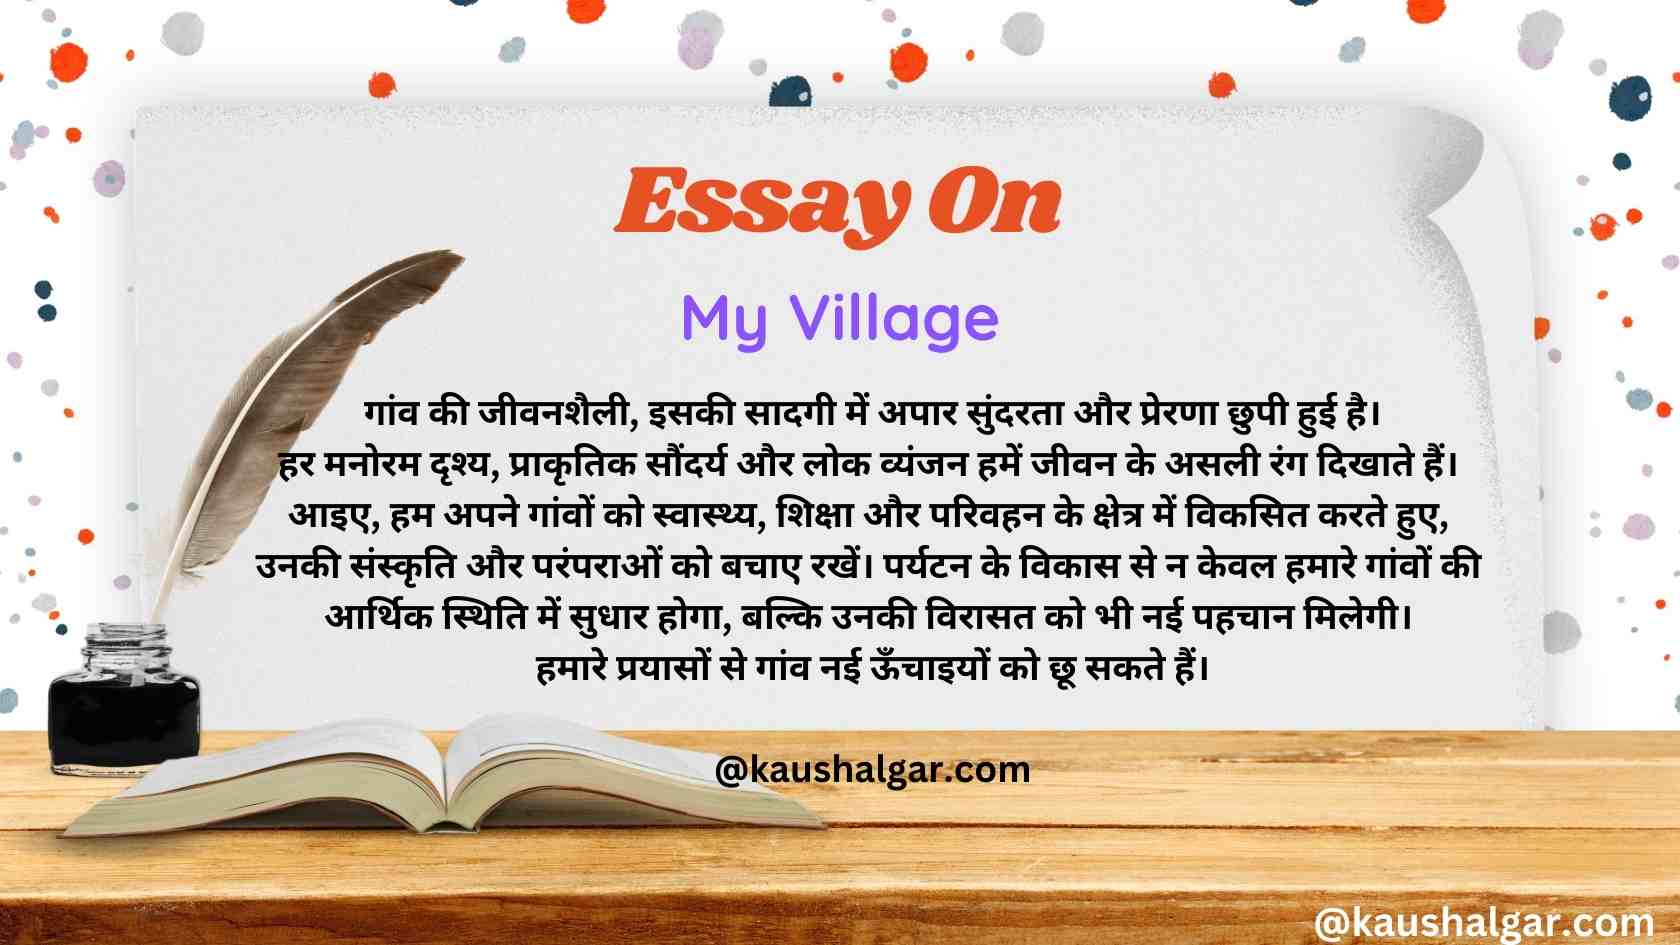 My Village Essay